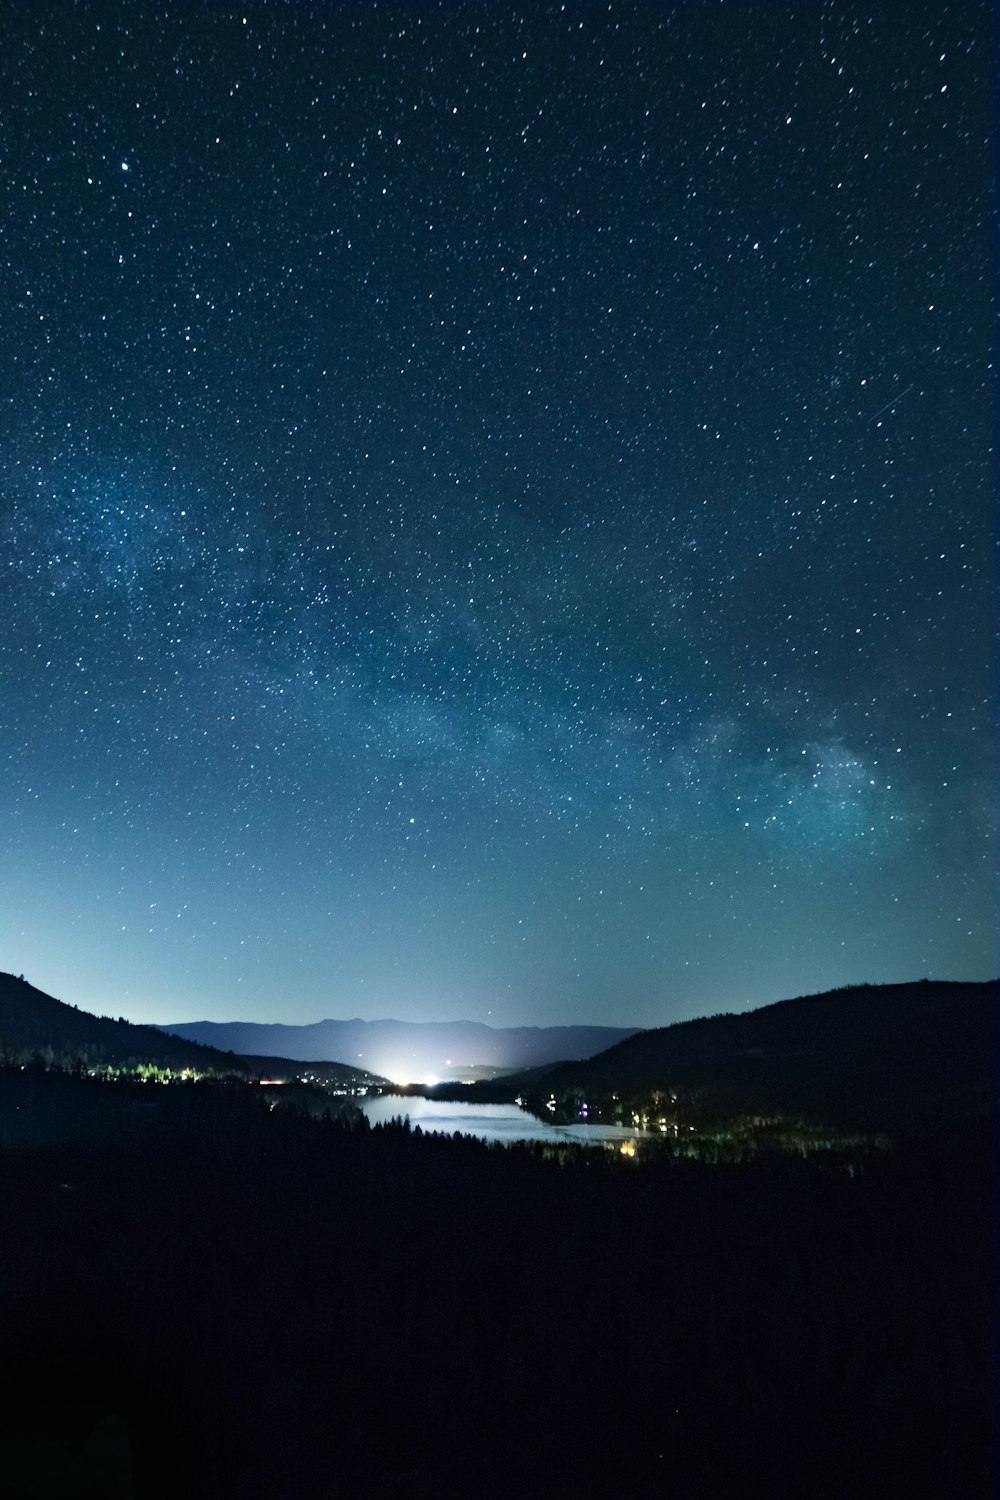 Der Nachthimmel mit Sternen über einem See